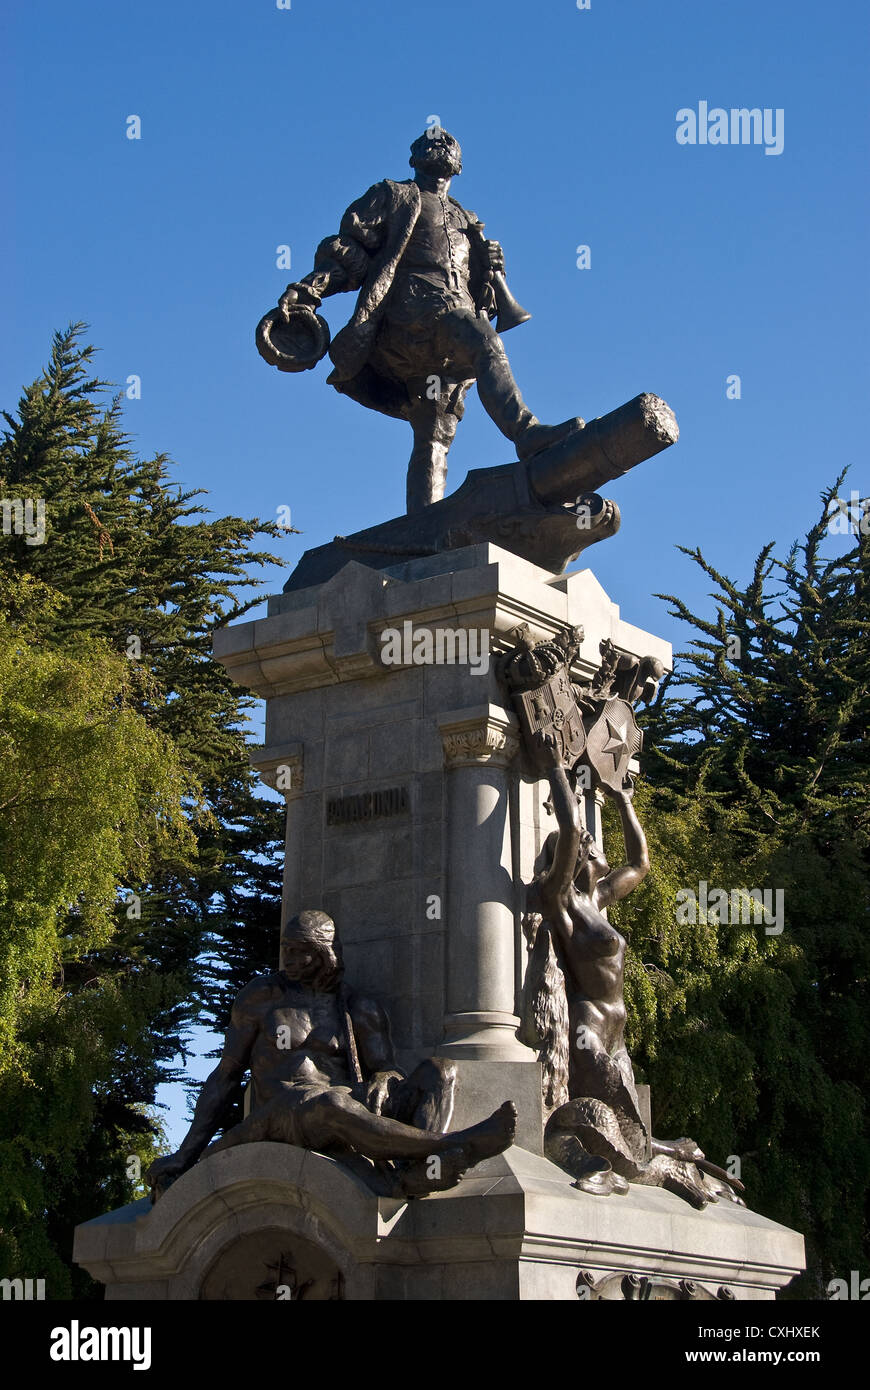 Elk198-4033v Chile, Patagonia, Punta Arenas, Plaza Munoz Gamero, statue of Magellan Stock Photo